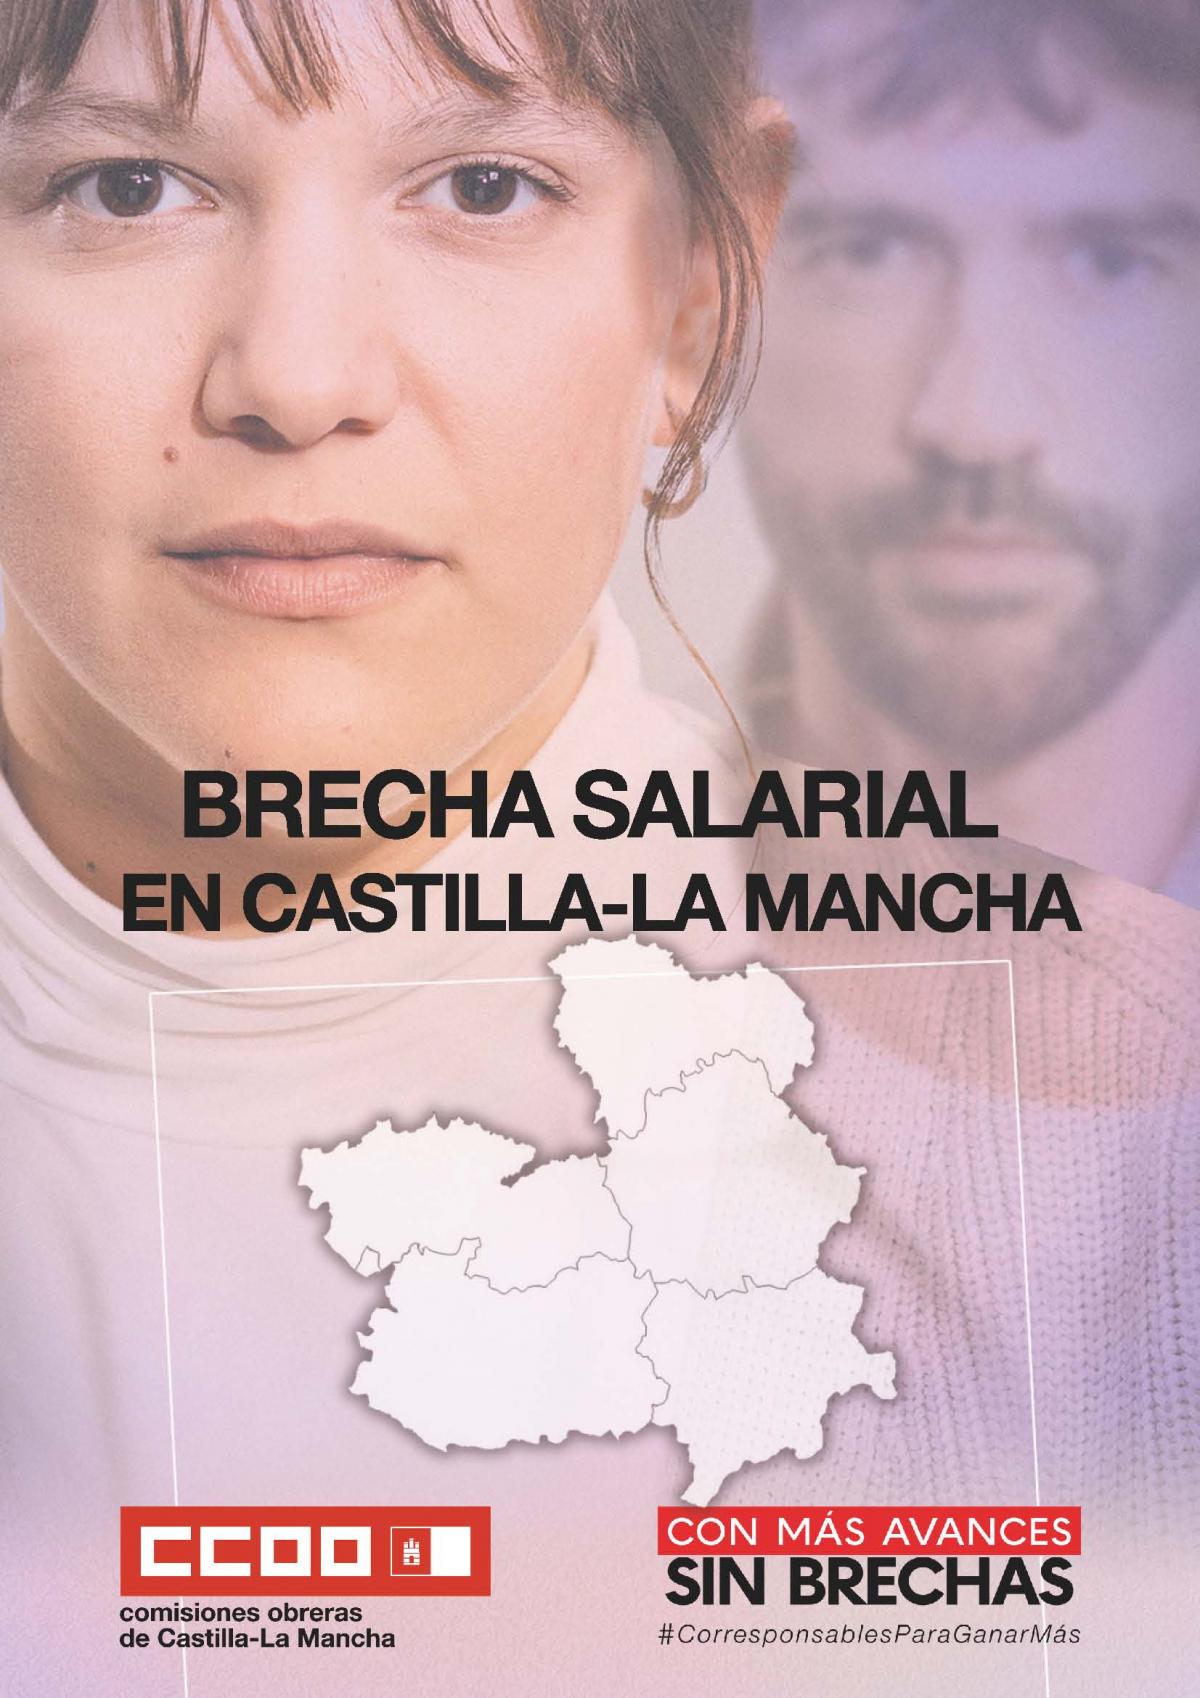 Brecha salarial en Castilla-La Mancha.